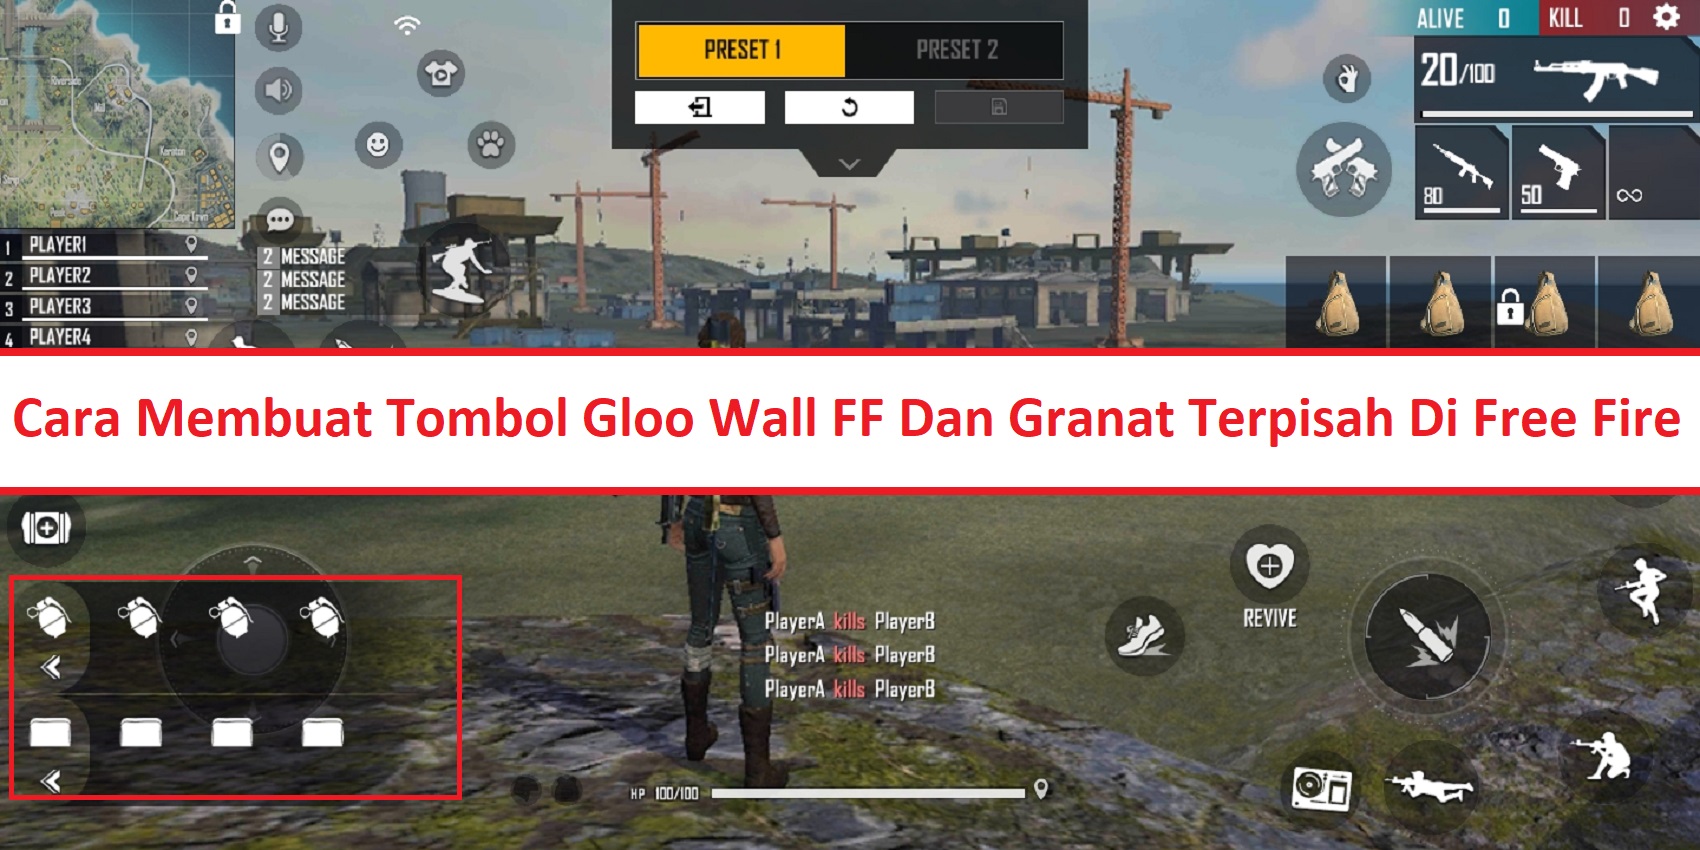 Cara Memisahkan Tombol Gloo Wall FF Dan Granat Free Fire